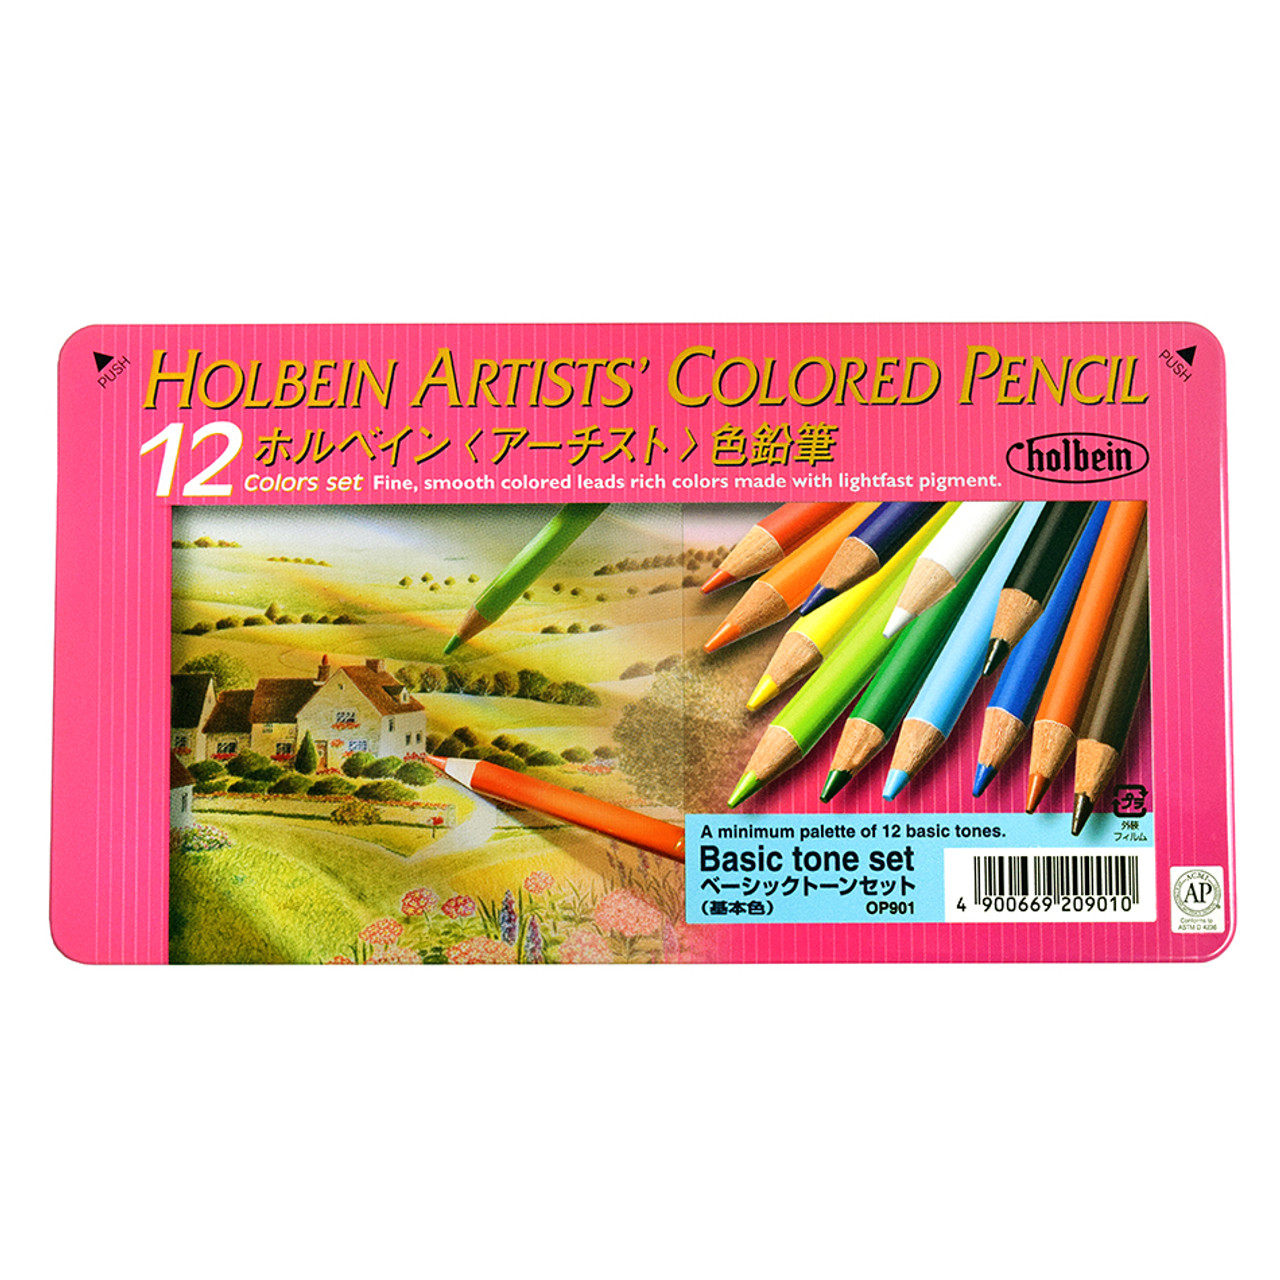 BUY Prismacolor Ebony Pencil Box of 12